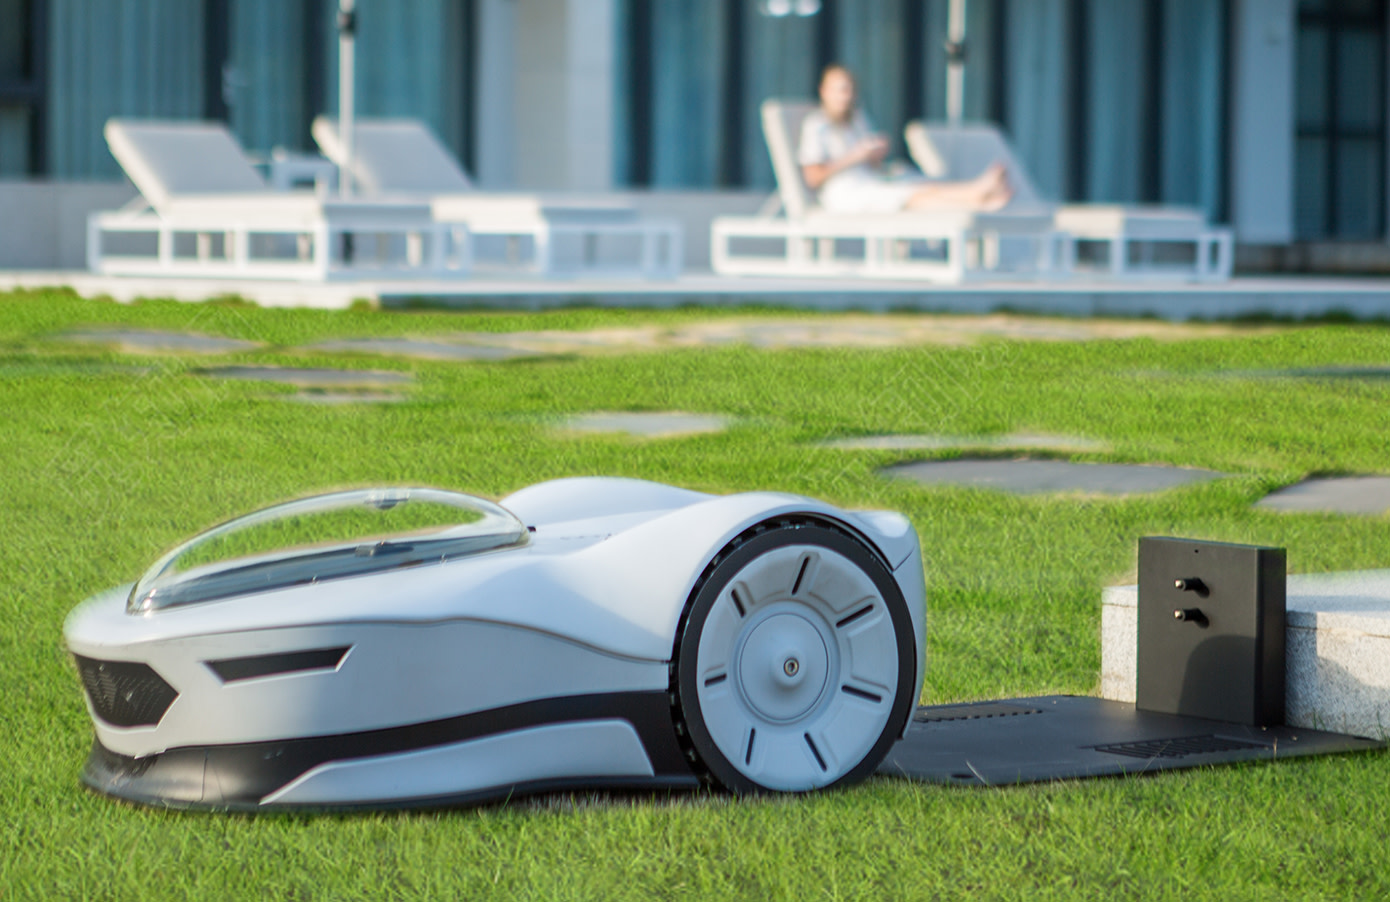 Novabot: Robot chăm sóc bãi cỏ tự động mang tính cách mạng